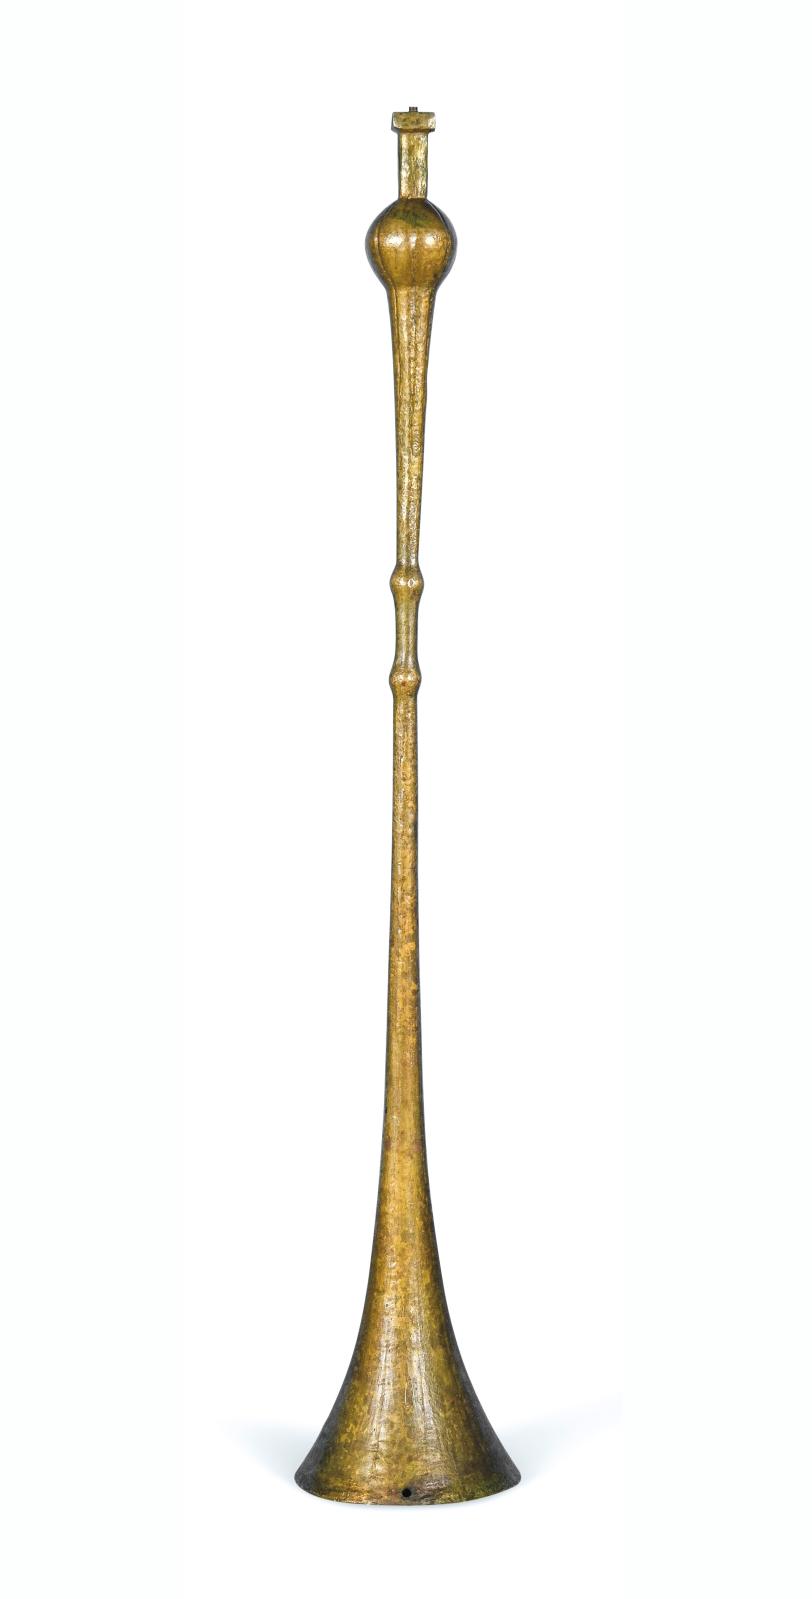 Lampadaire Trompette d'Alberto Giacometti, une édition très limitée